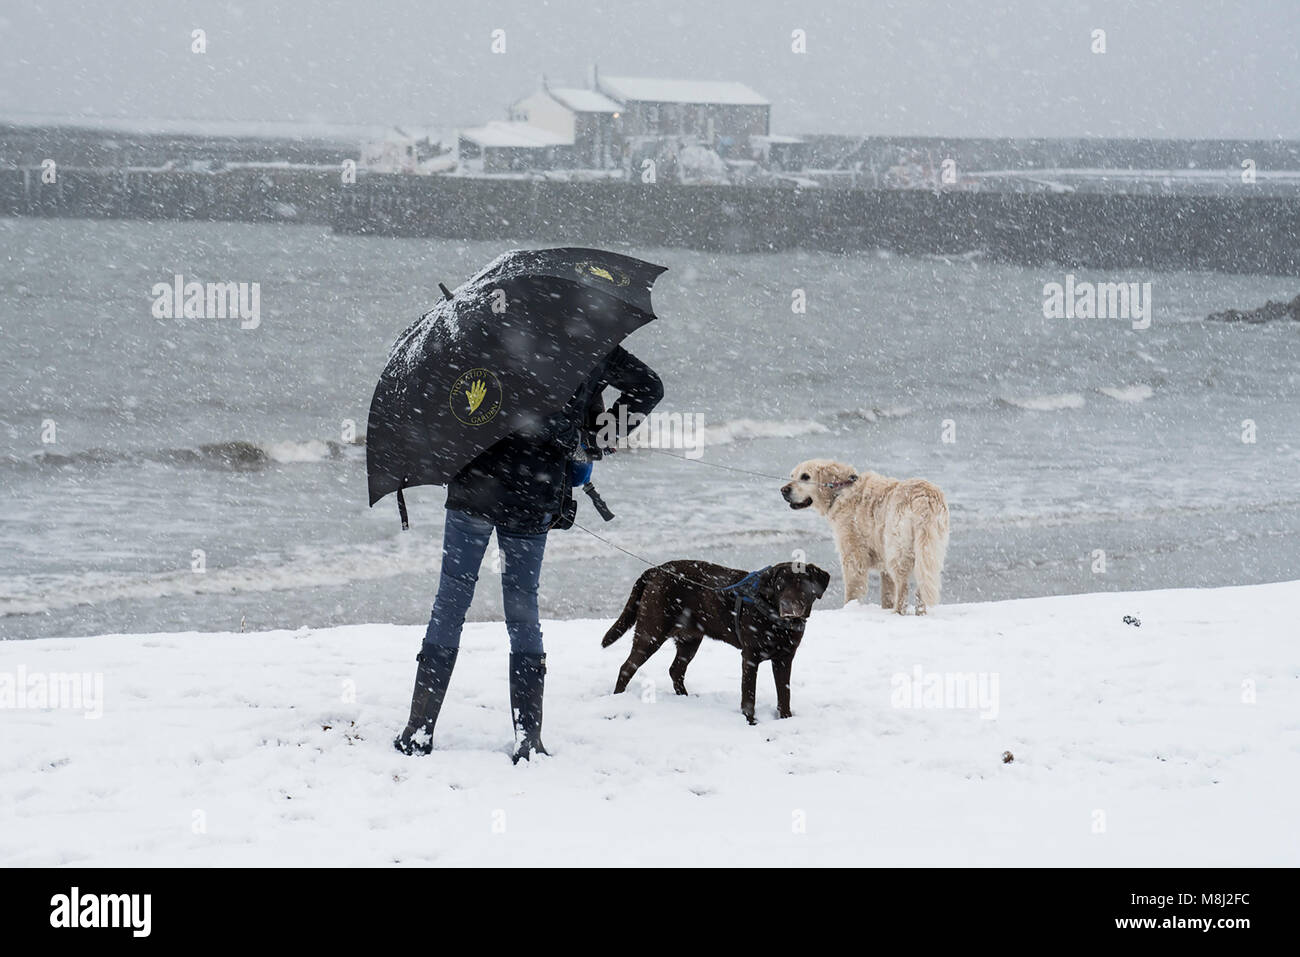 Schnee in Lyme Regis, 18. März 2018. UK Wetter: Eine junge Frau kämpft mit ihrem Schirm, wie Sie geht ihre Hunde am Strand in der Grafschaft Dorset an der Küste von Lyme Regis, wie das Tier aus dem Osten 2 Hdo. Kredit Celia McMahon/Alamy leben Nachrichten. Stockfoto